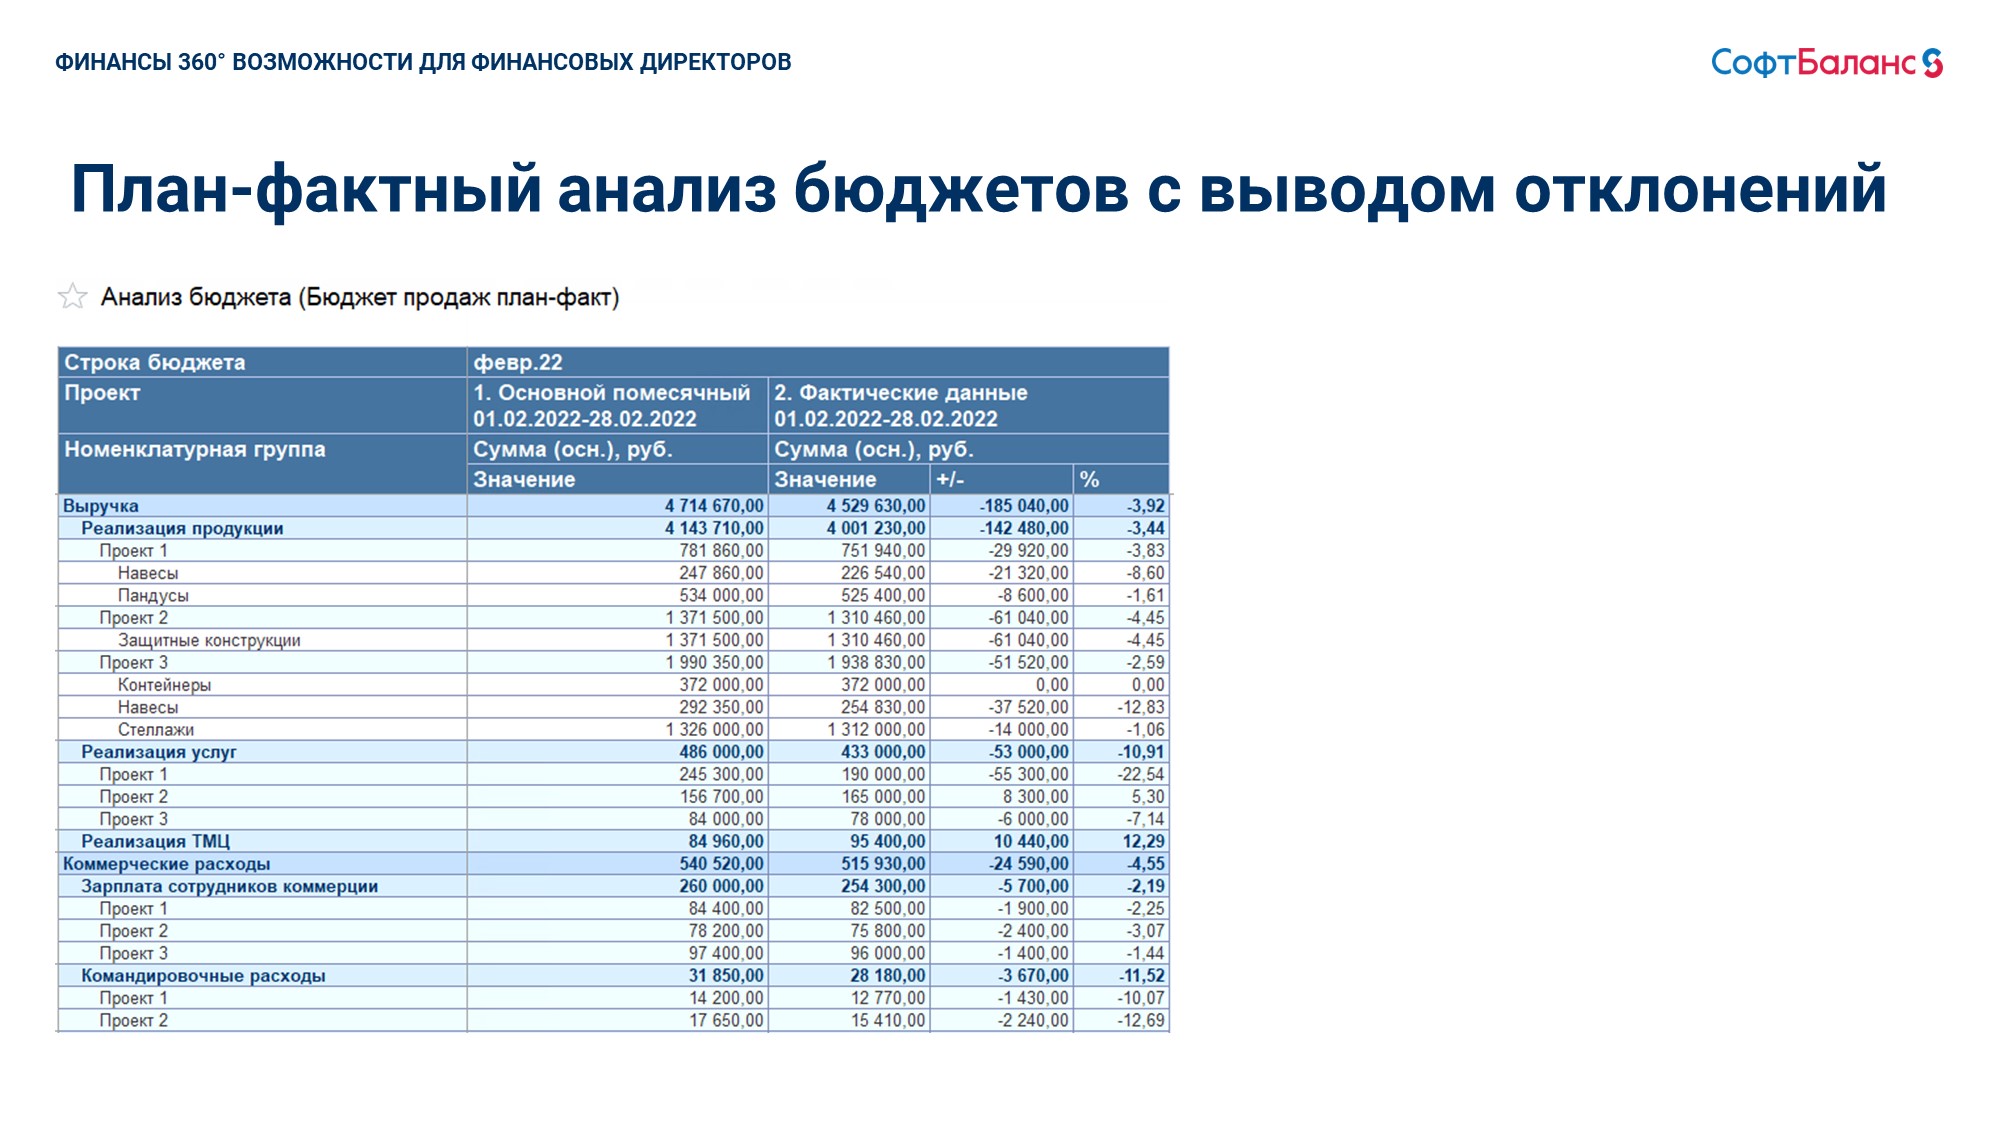 Анализ бюджетов. Слайд 2